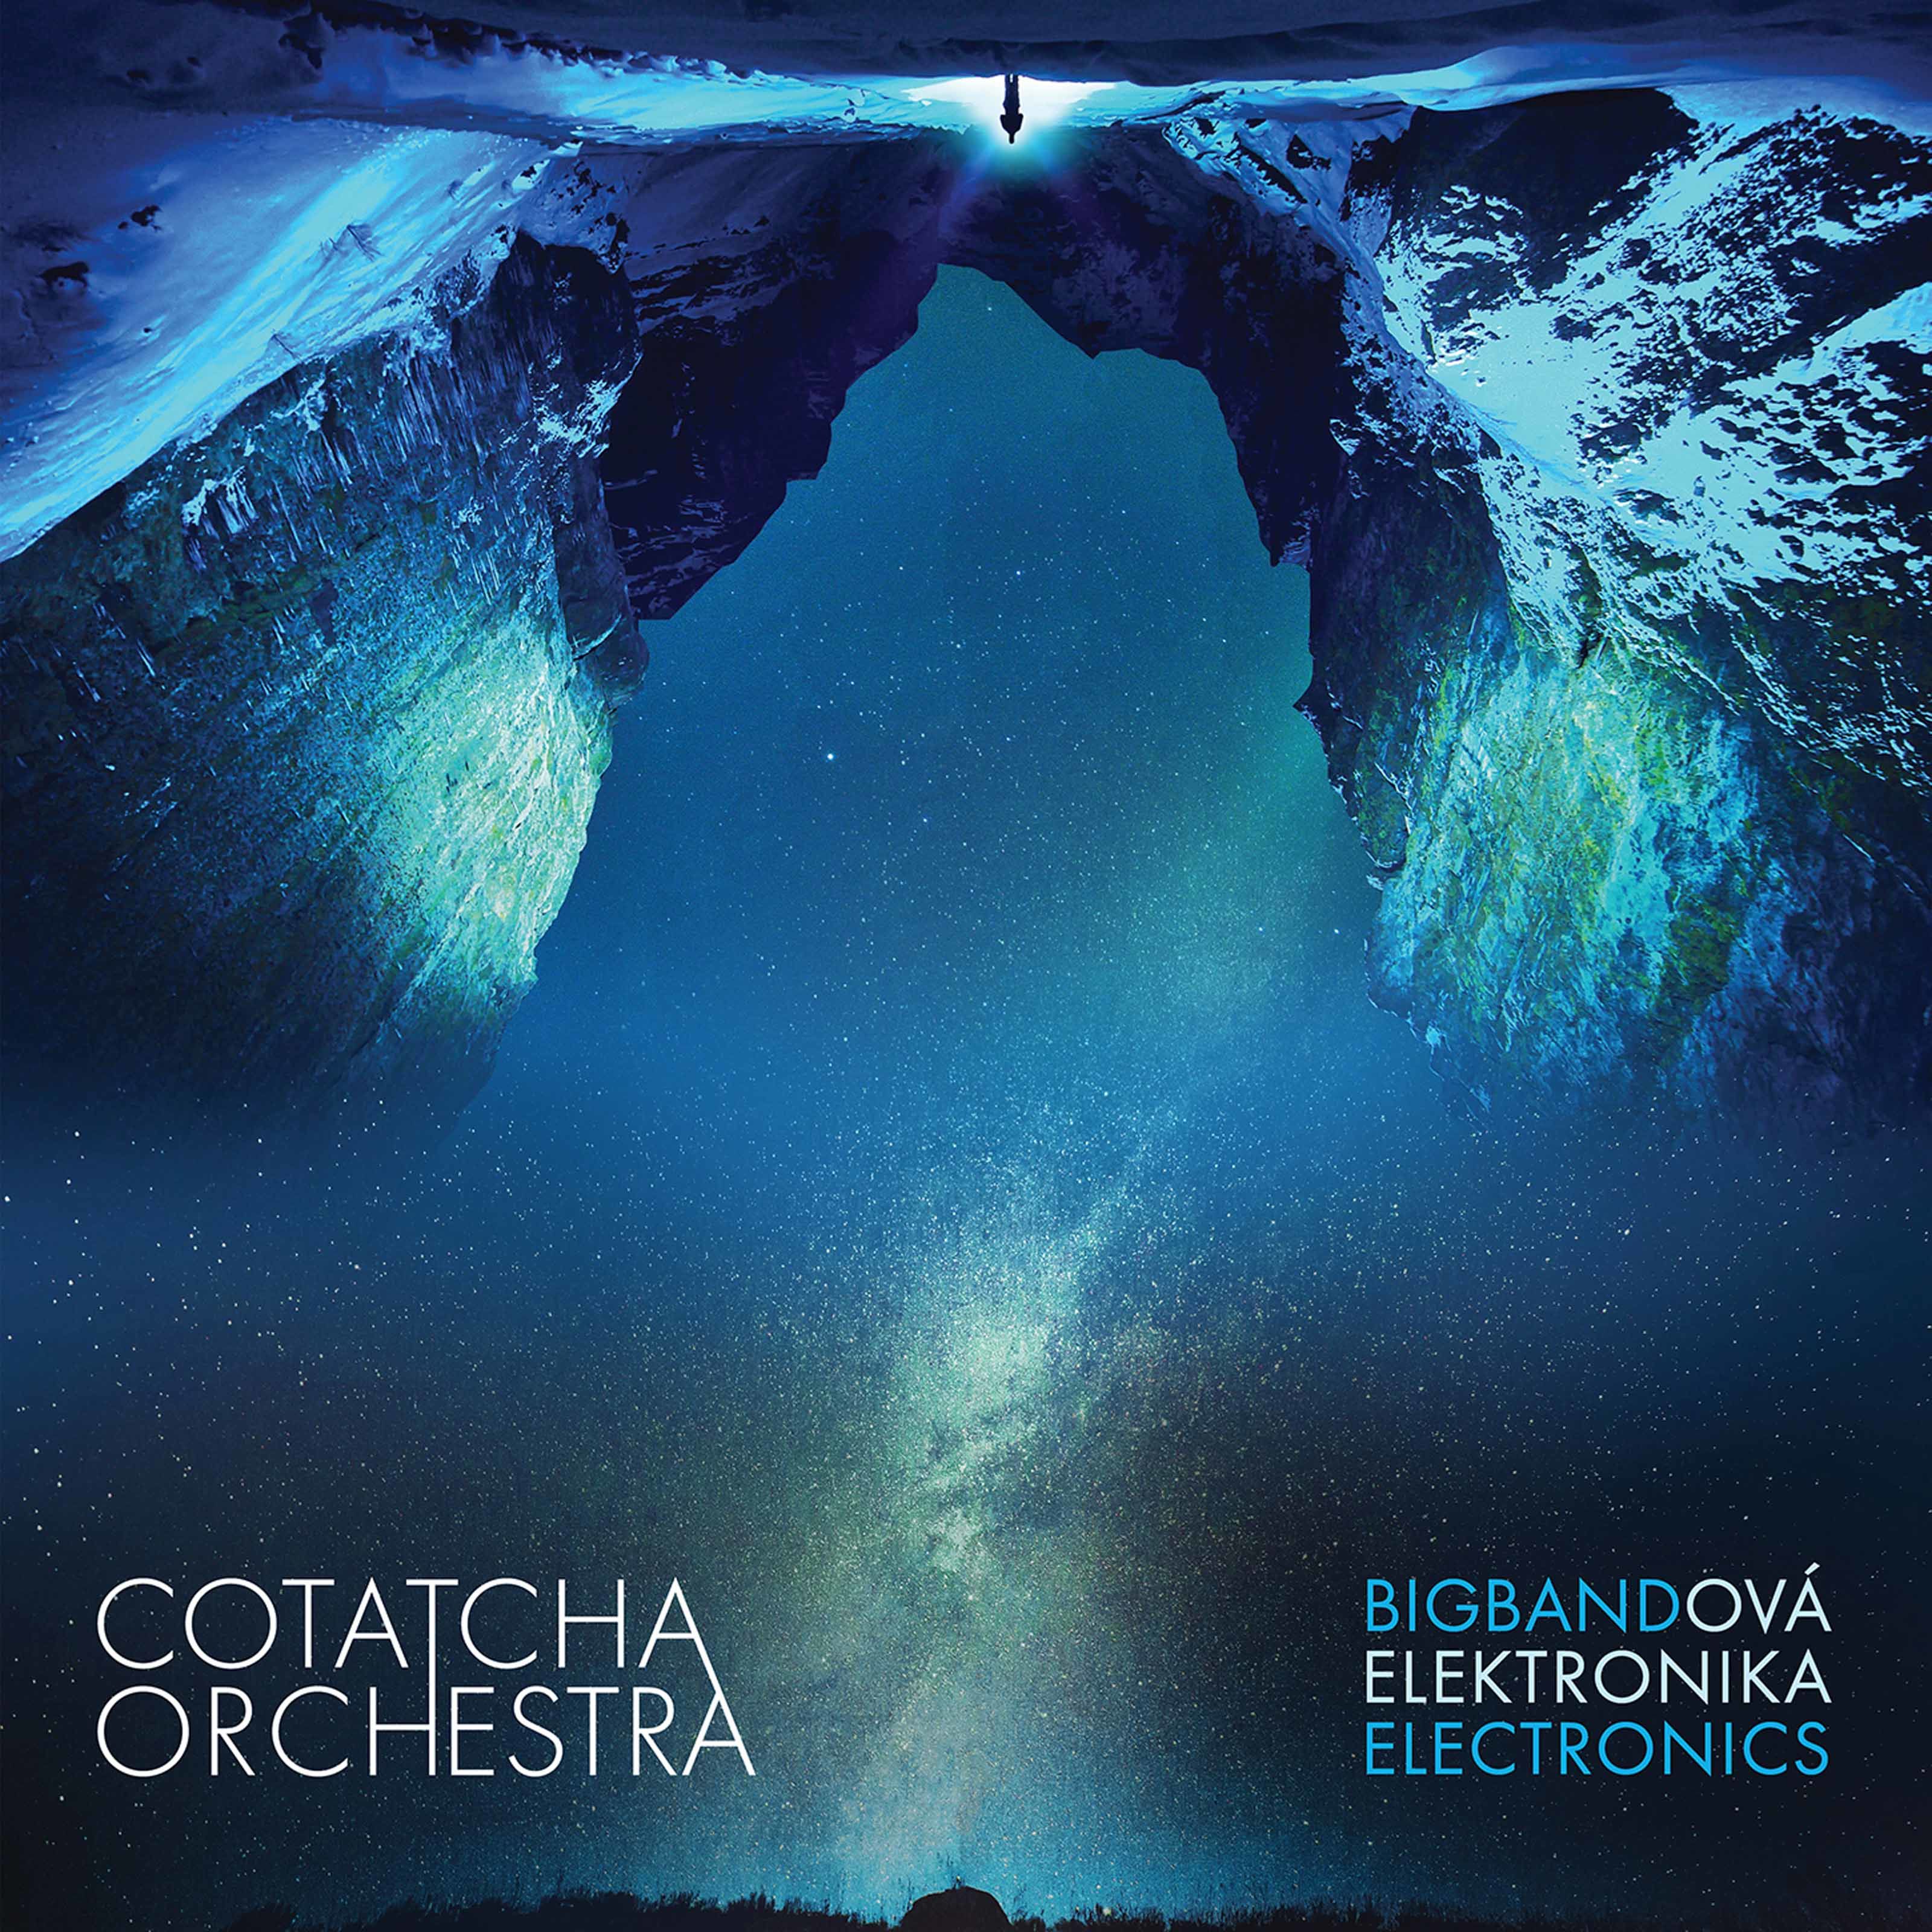 Cotatcha Orchestra – Bigbandova elektronika (2020) [FLAC 24bit/96kHz]